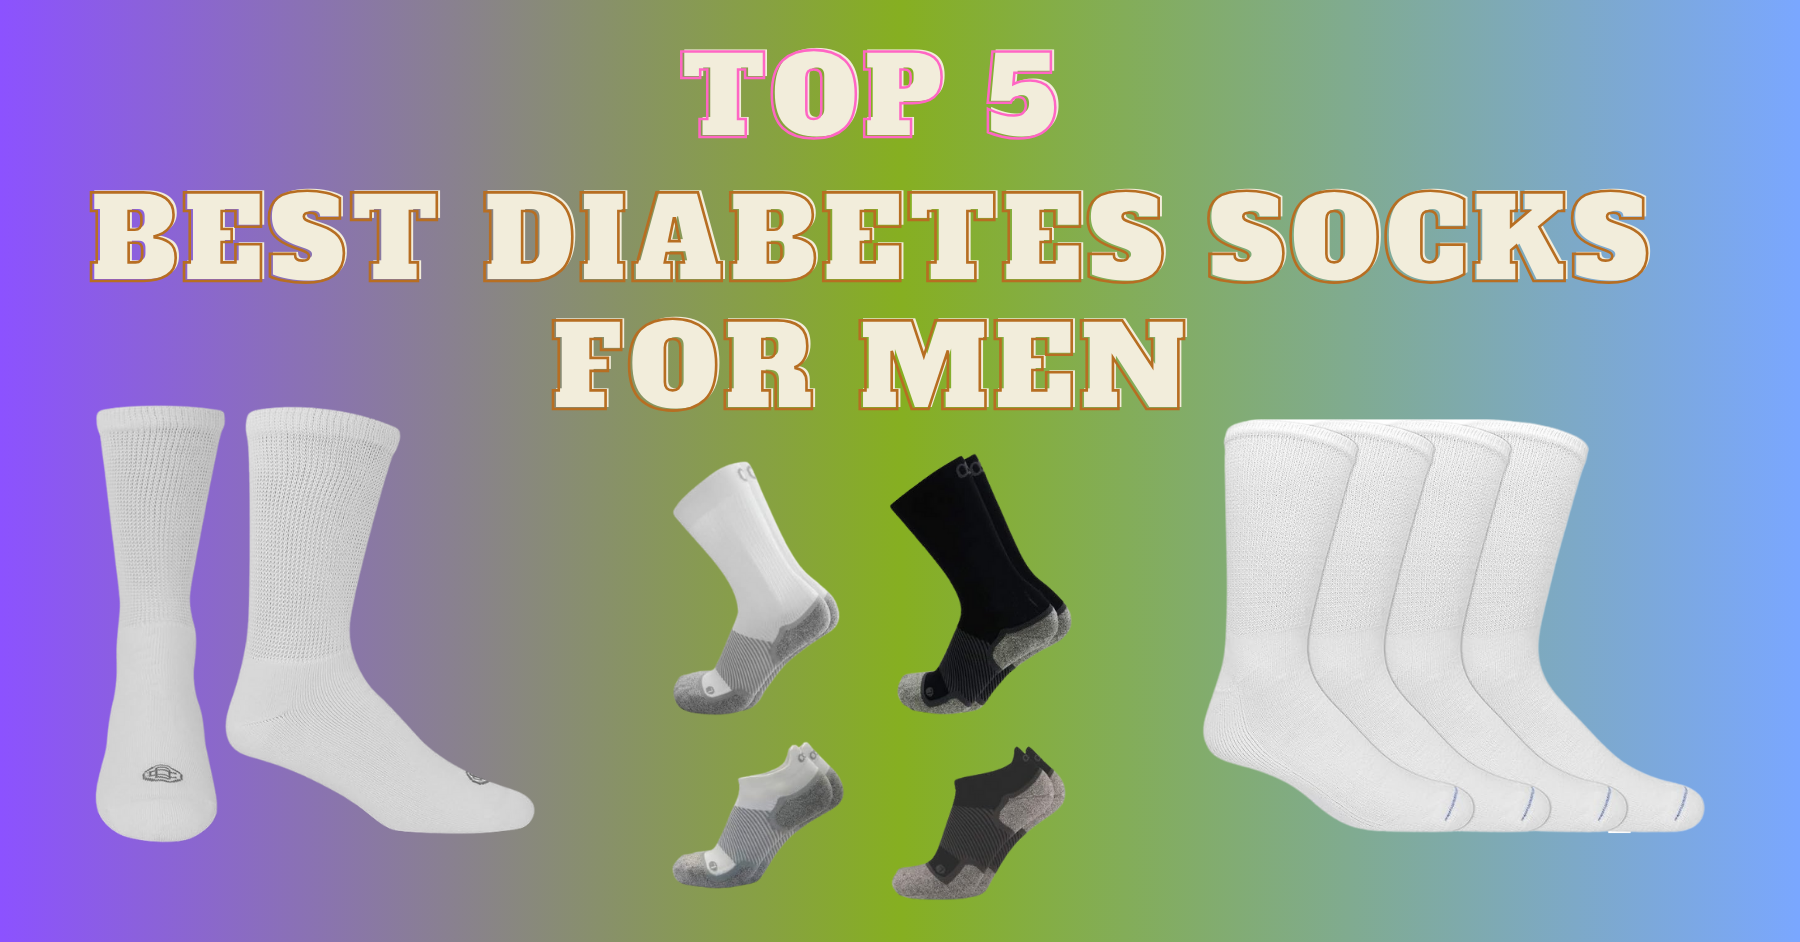 The Best Diabetic Socks for Men